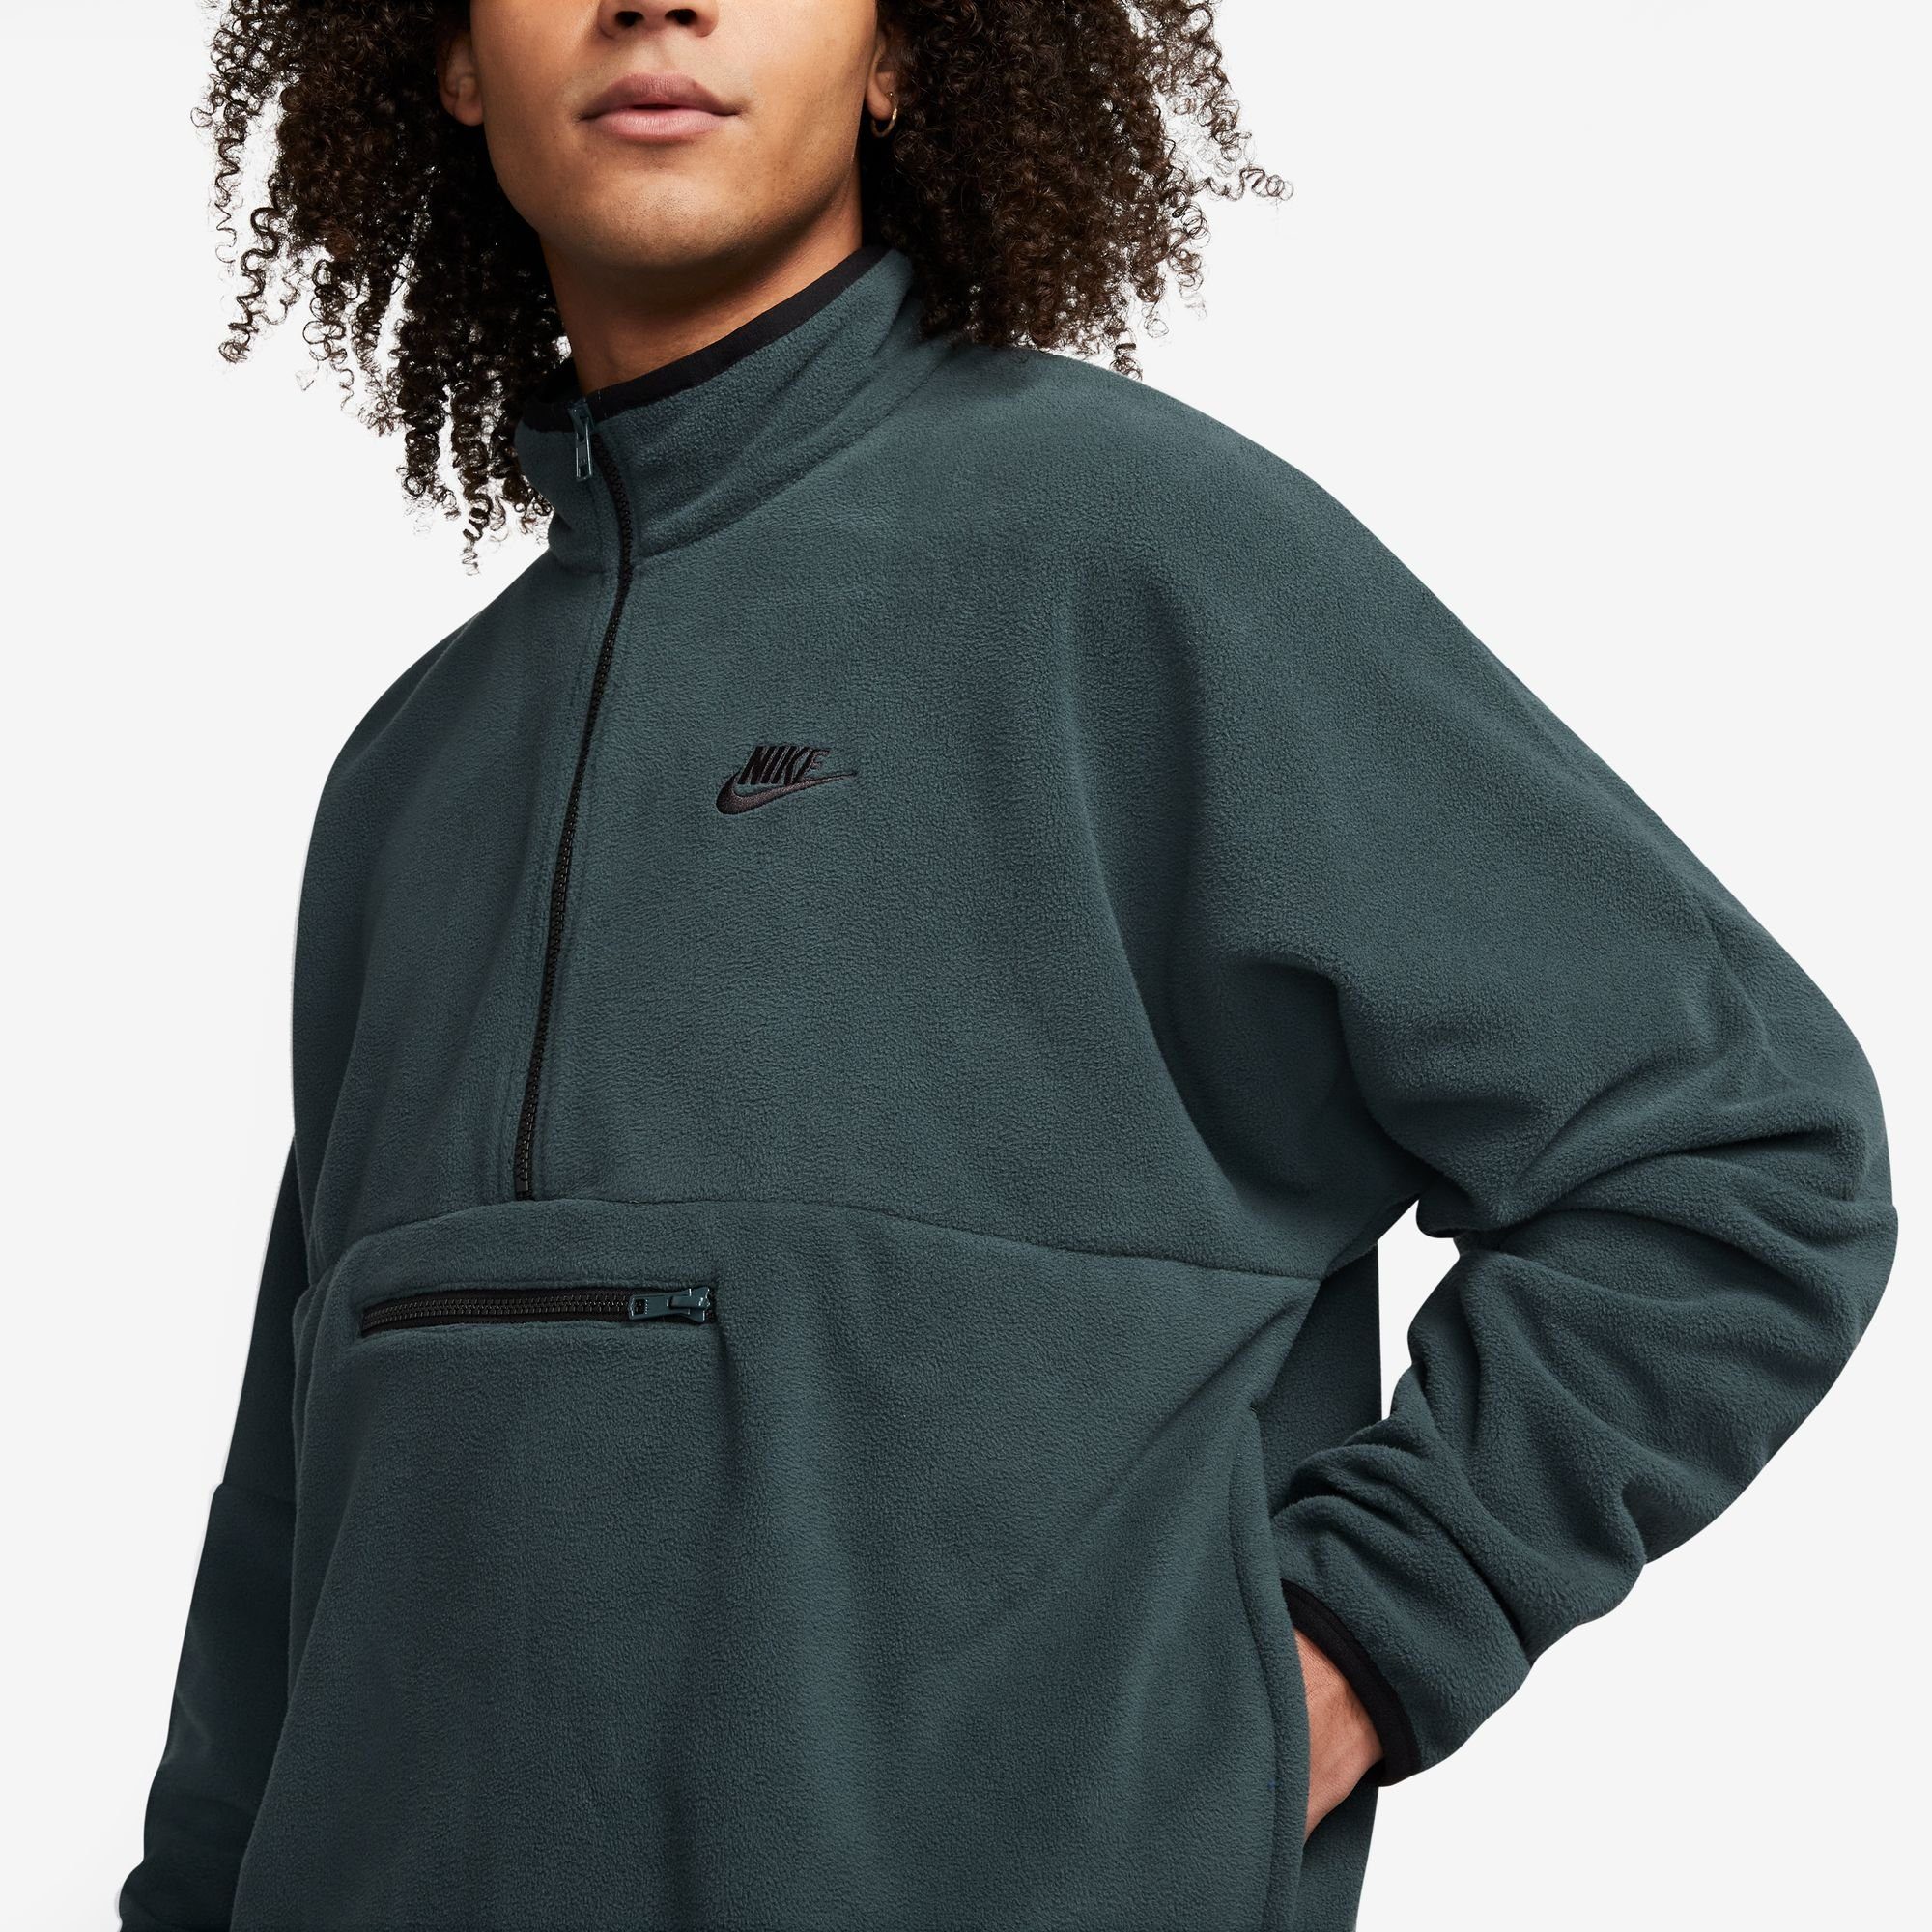 FLEECE TOP MEN'S DEEP JUNGLE/BLACK Nike Sweatshirt 1/-ZIP FLEECE+ Sportswear CLUB